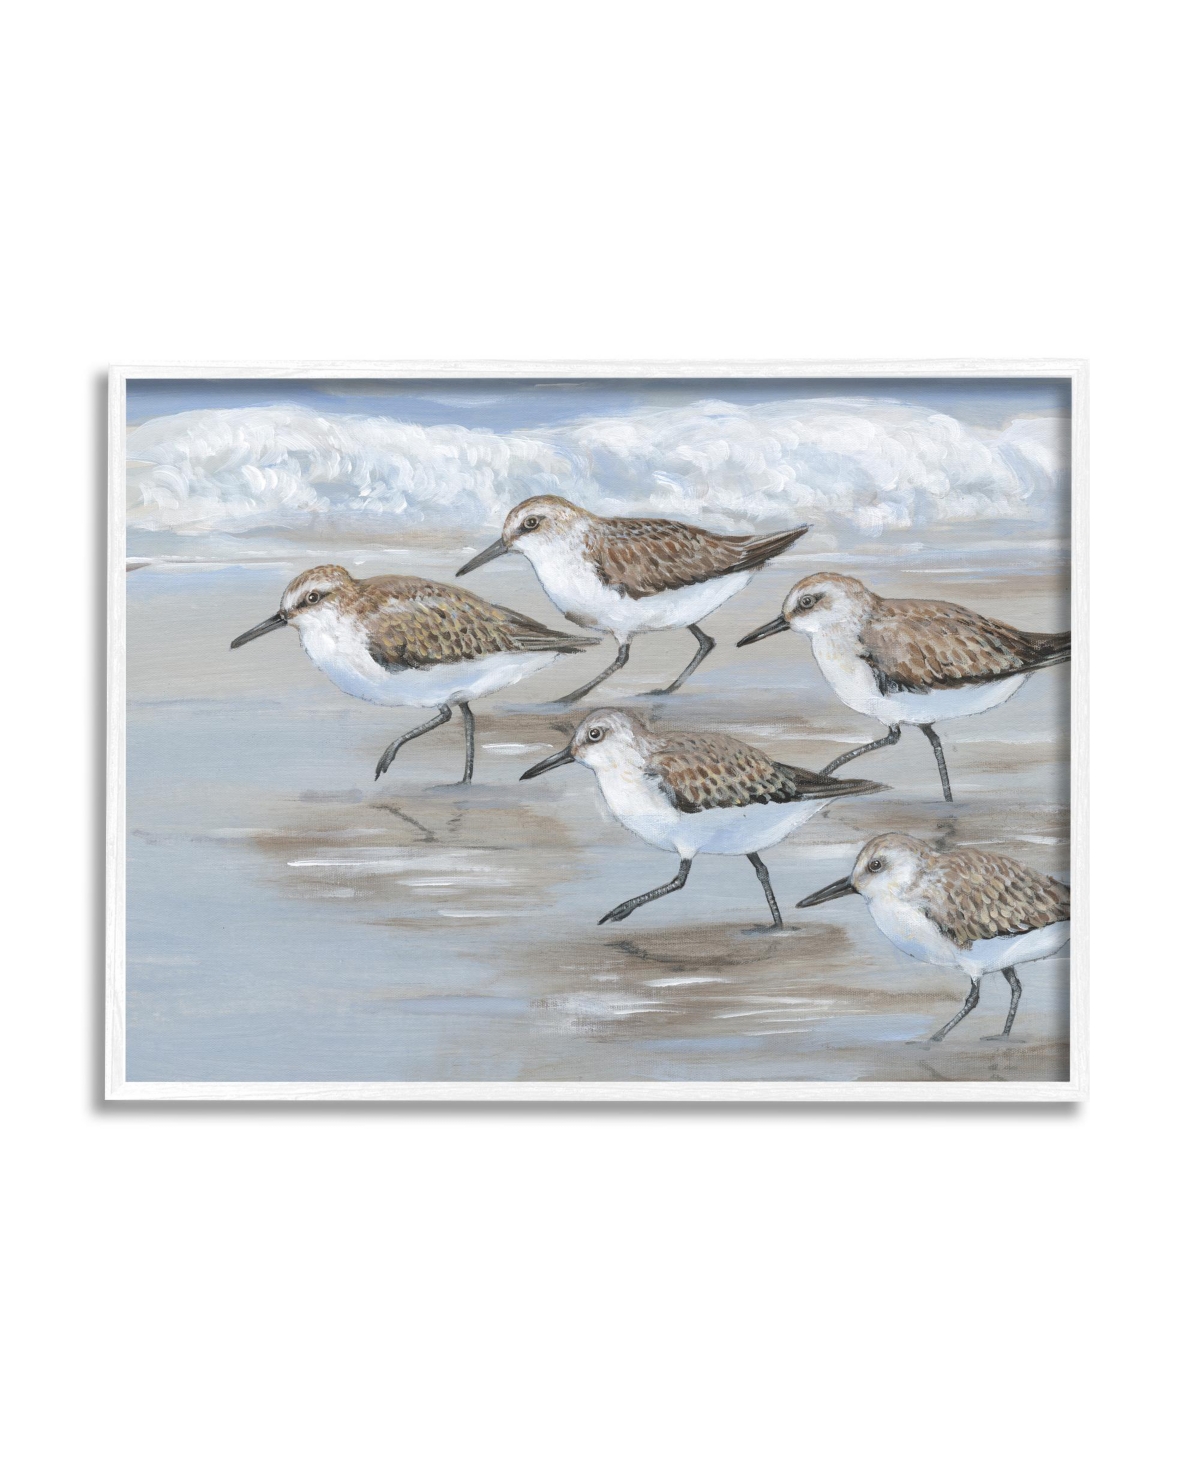 STUPELL INDUSTRIES SANDPIPER BIRDS BEACH MARCH FRAMED GICLEE ART, 11" X 1.5" X 14"